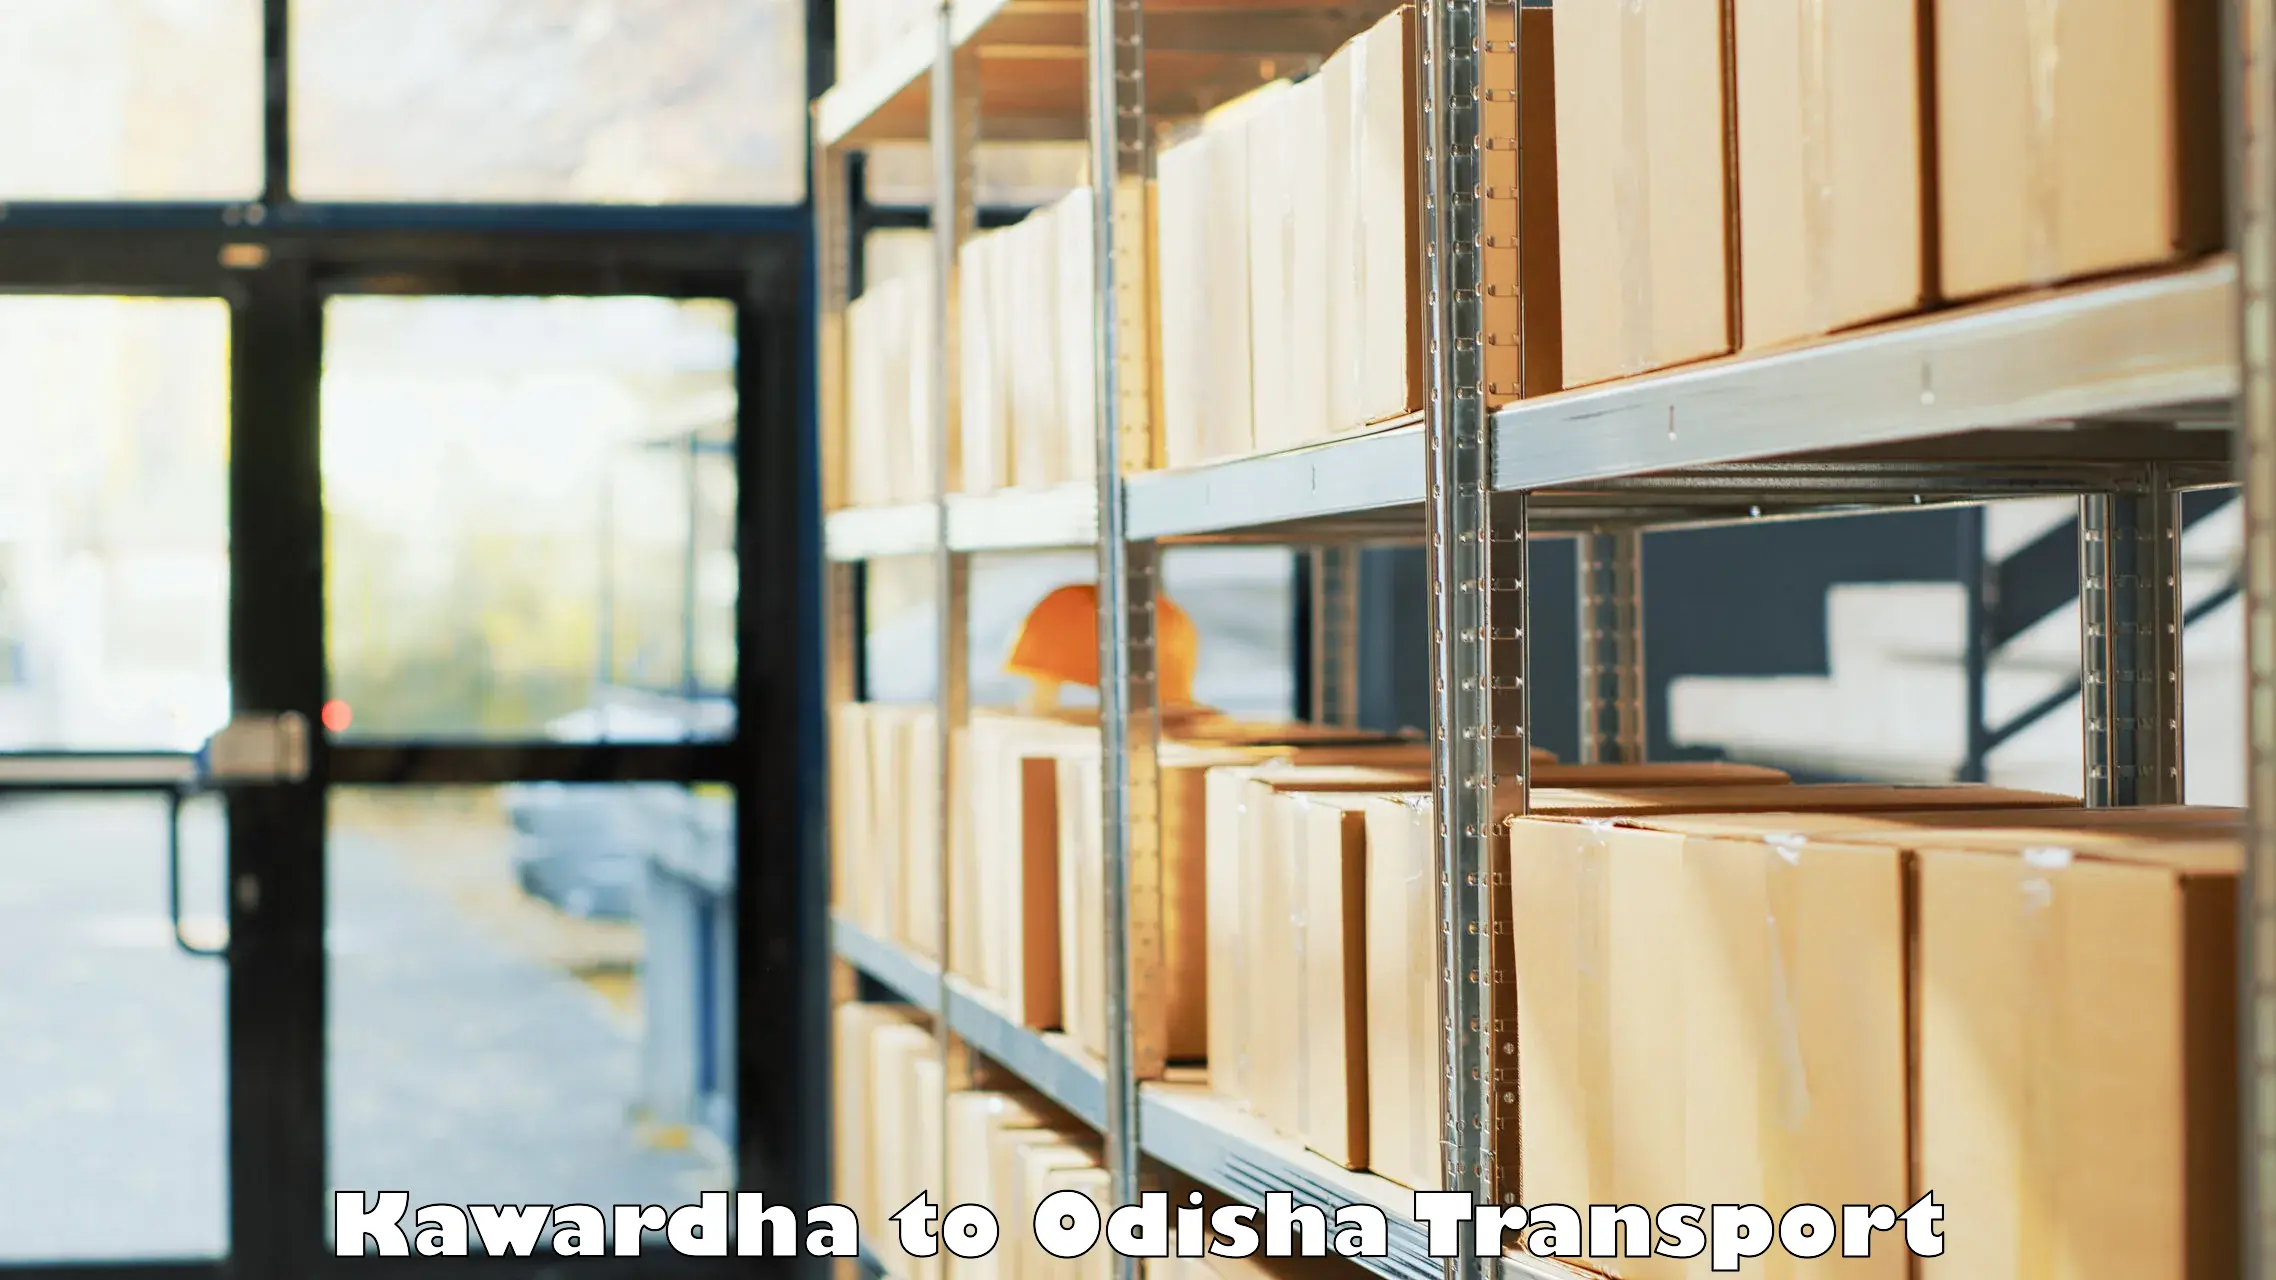 Transport in sharing Kawardha to Baisinga